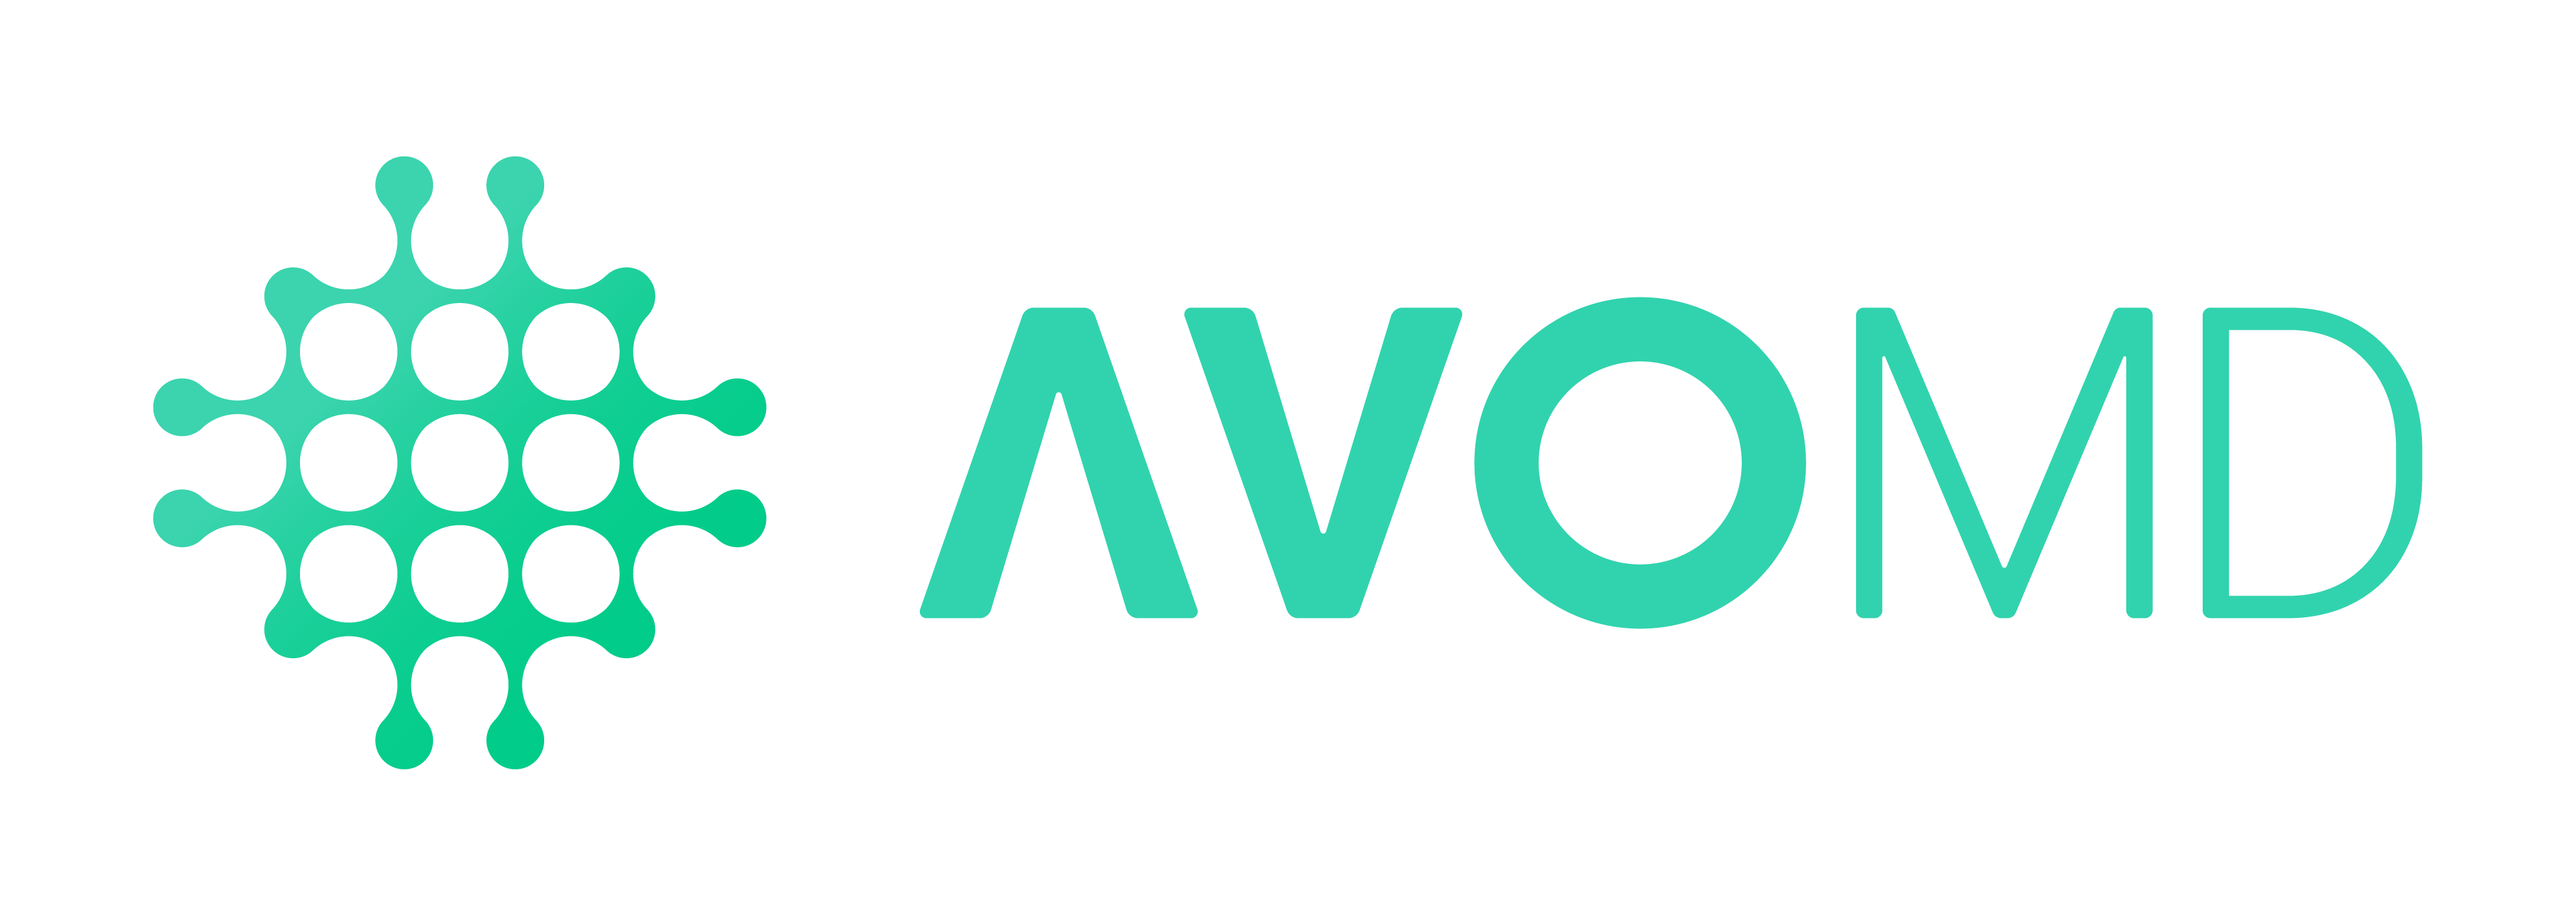 AvoMD logo